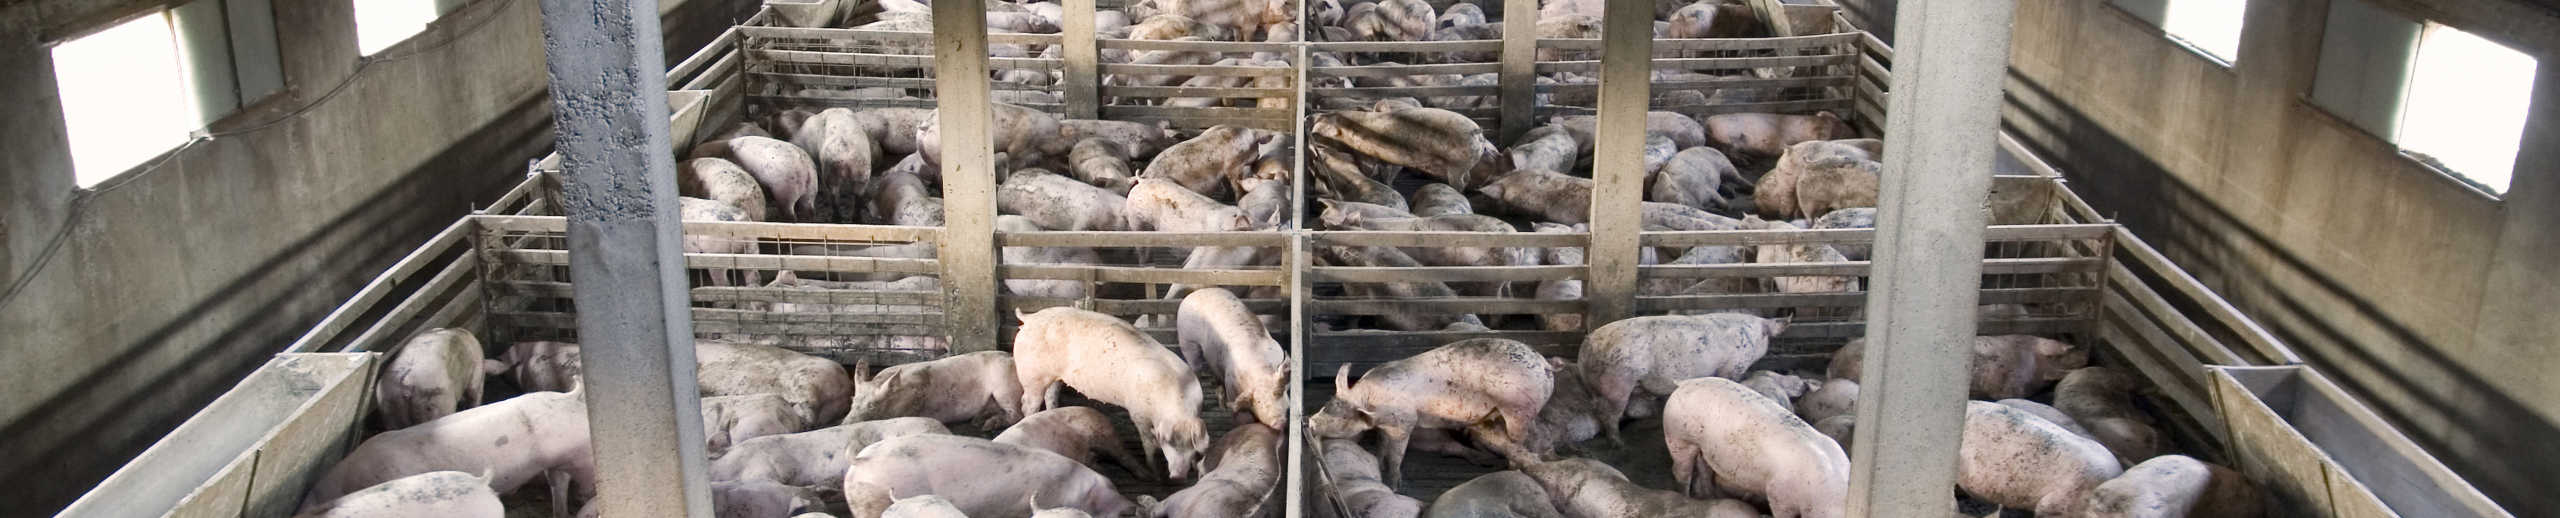 Schweine in einer Massentierhaltung